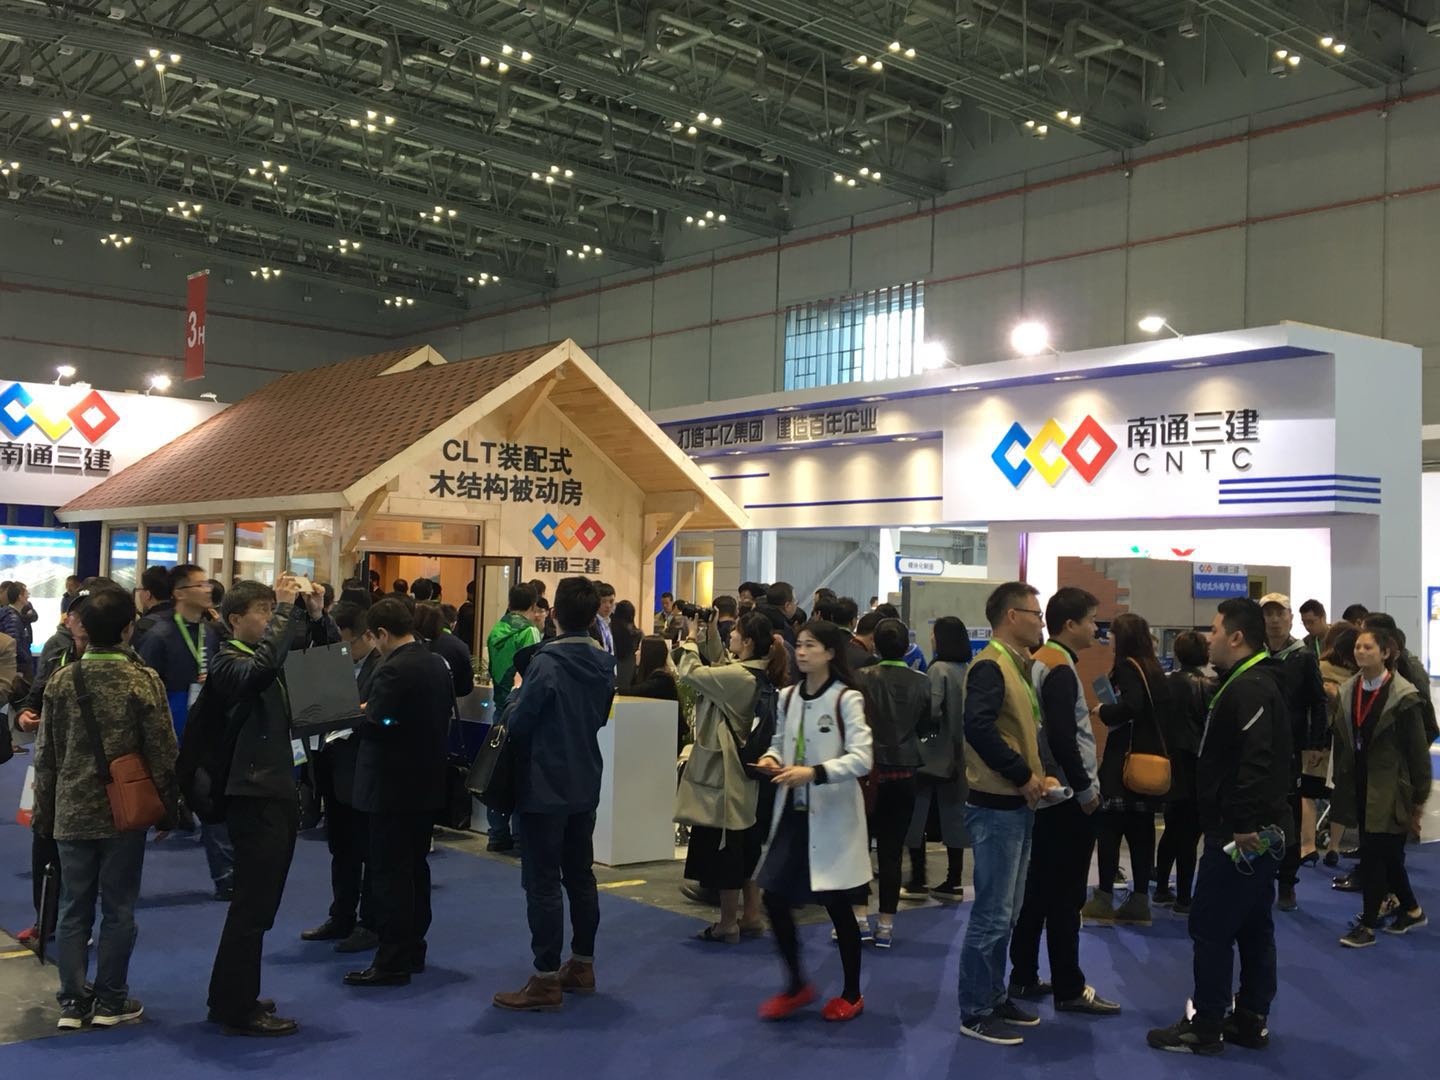 关于-2020上海装配式建筑展览会-时间及官网